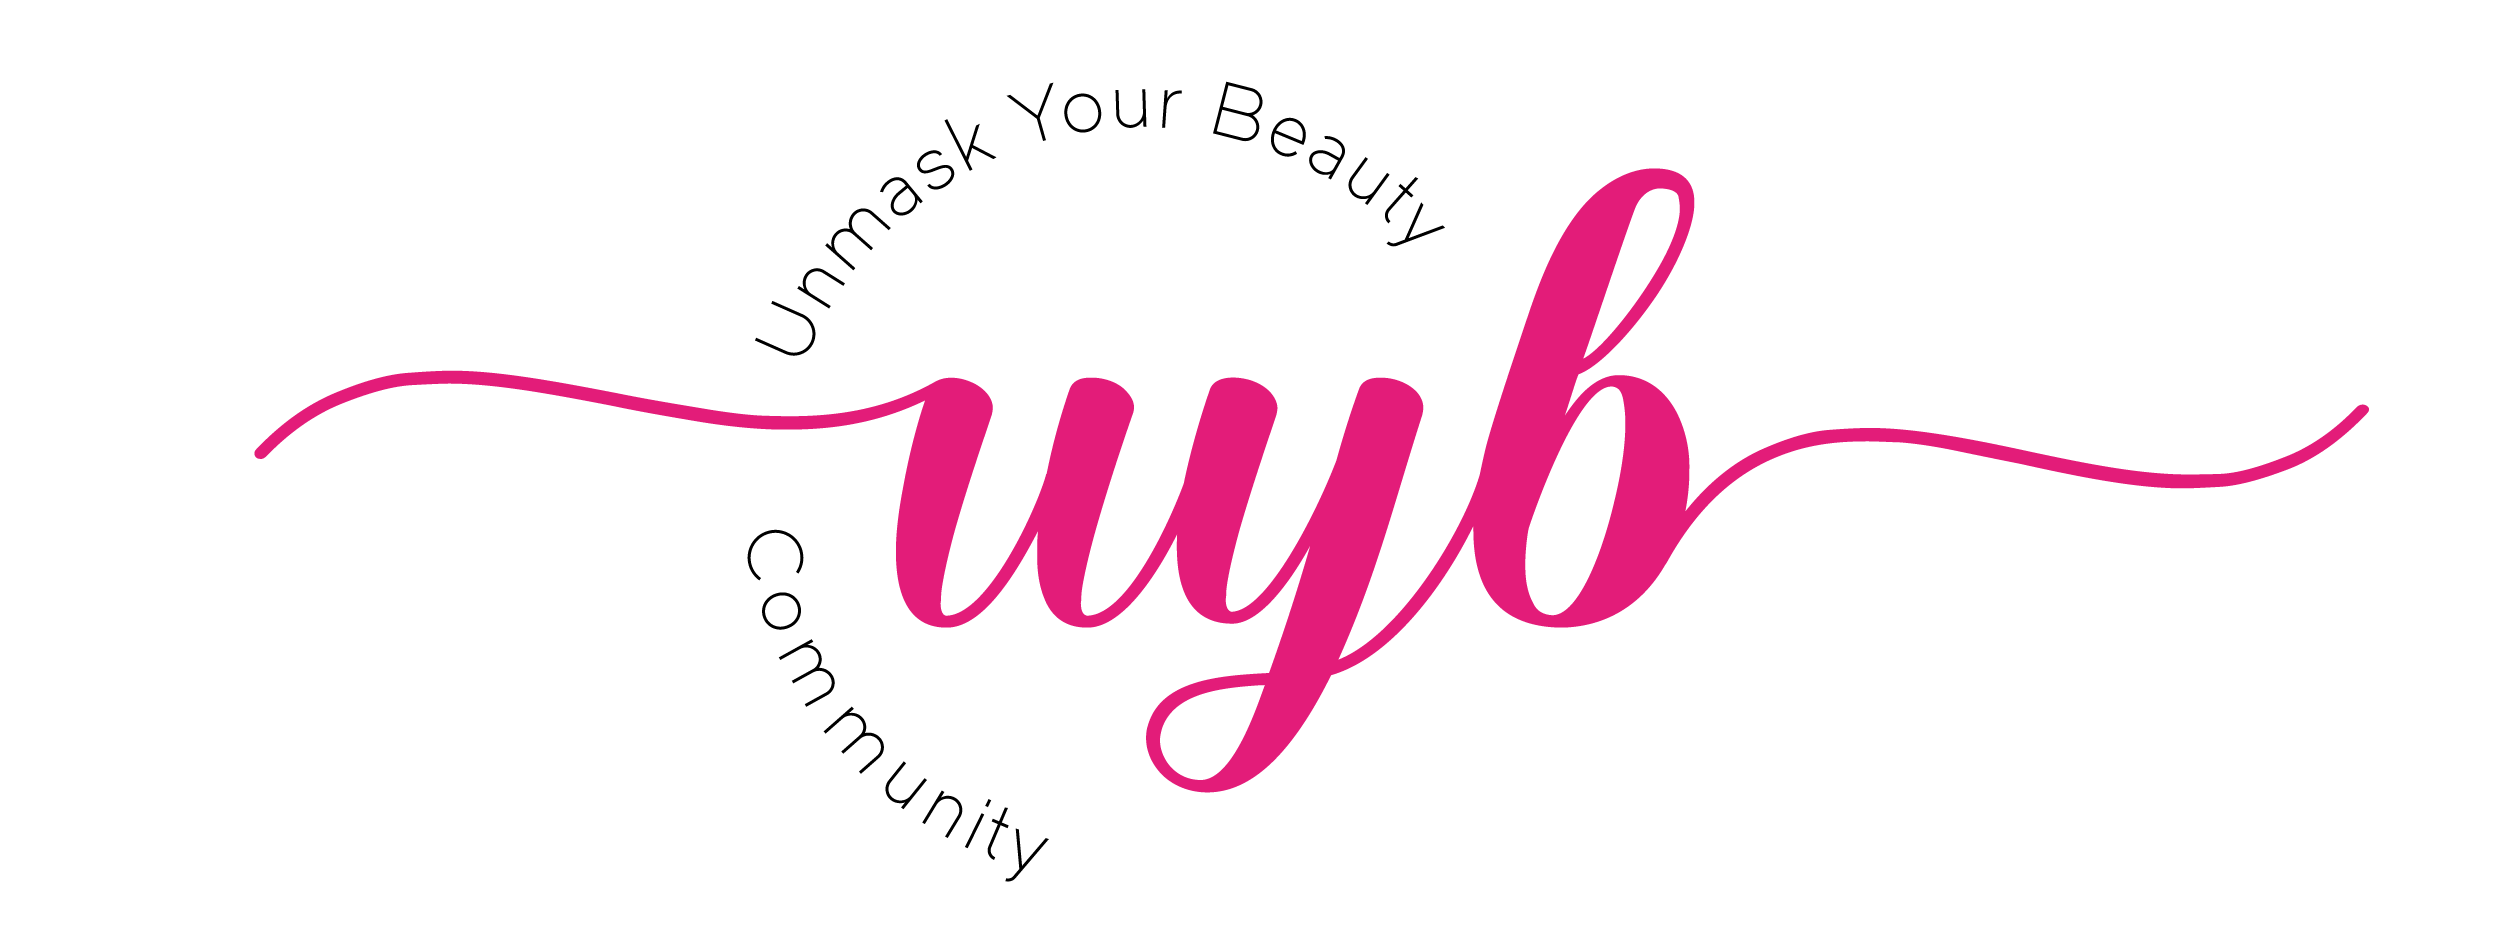 uyb logo